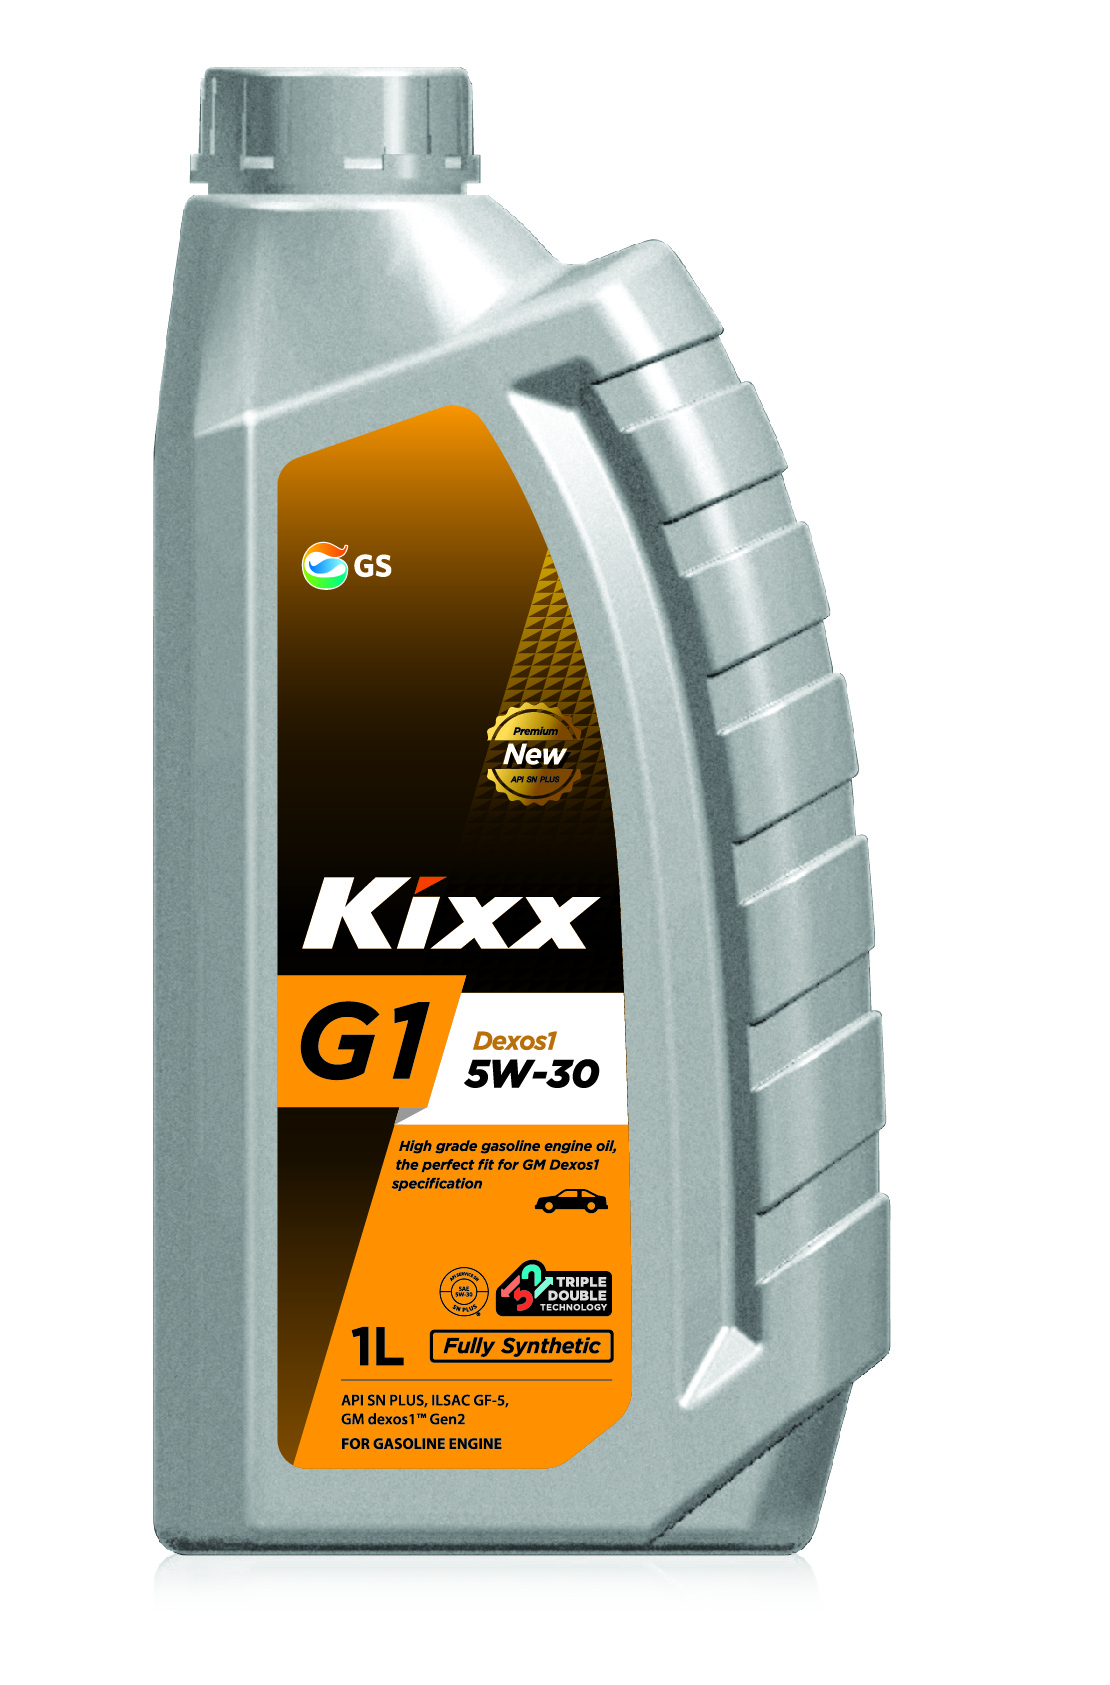 Масло моторное Kixx G1 Dexos1 Gen2 5w-30 API SN PlusILSAC GF-5 1л L2107AL1E1